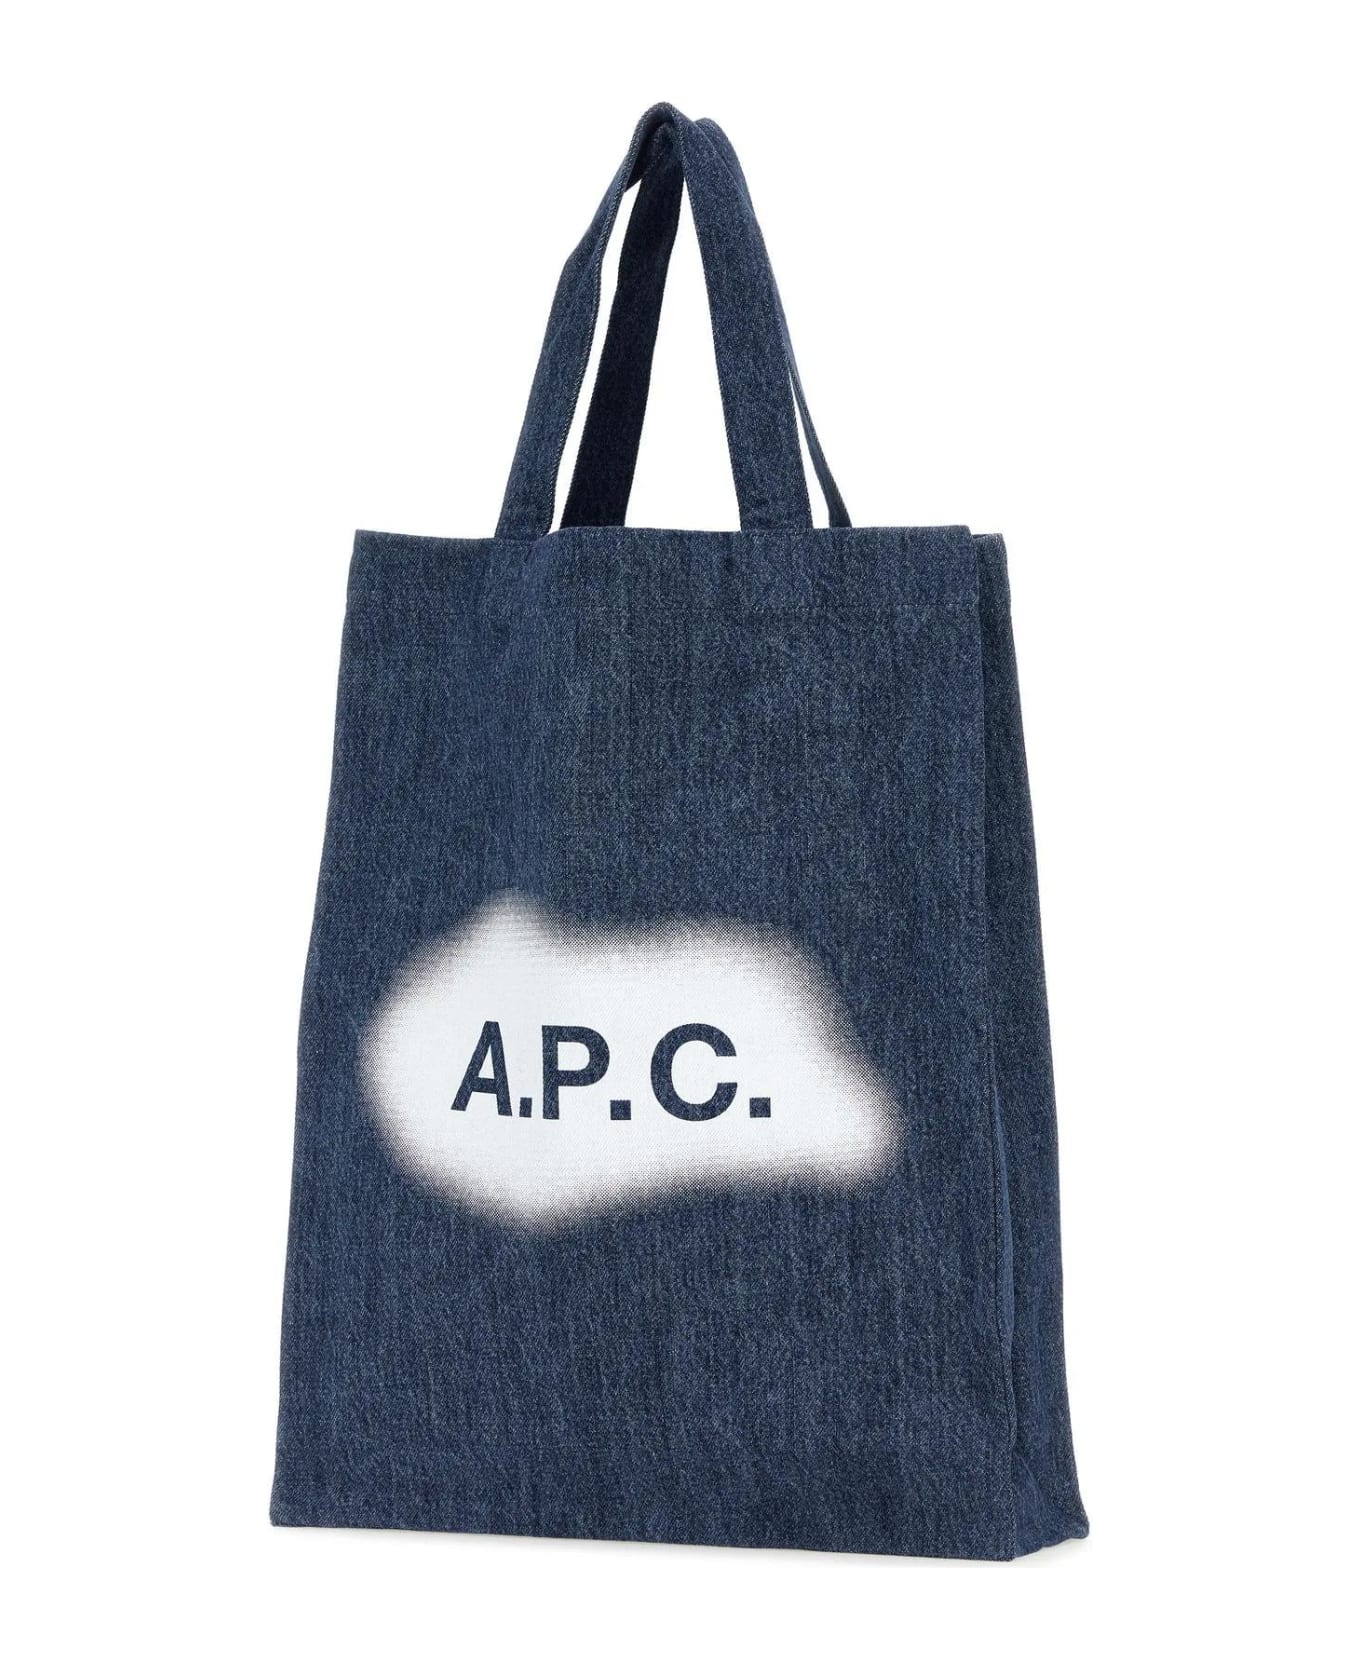 A.P.C. Lou Shopping Bag - WASHED INDIGO